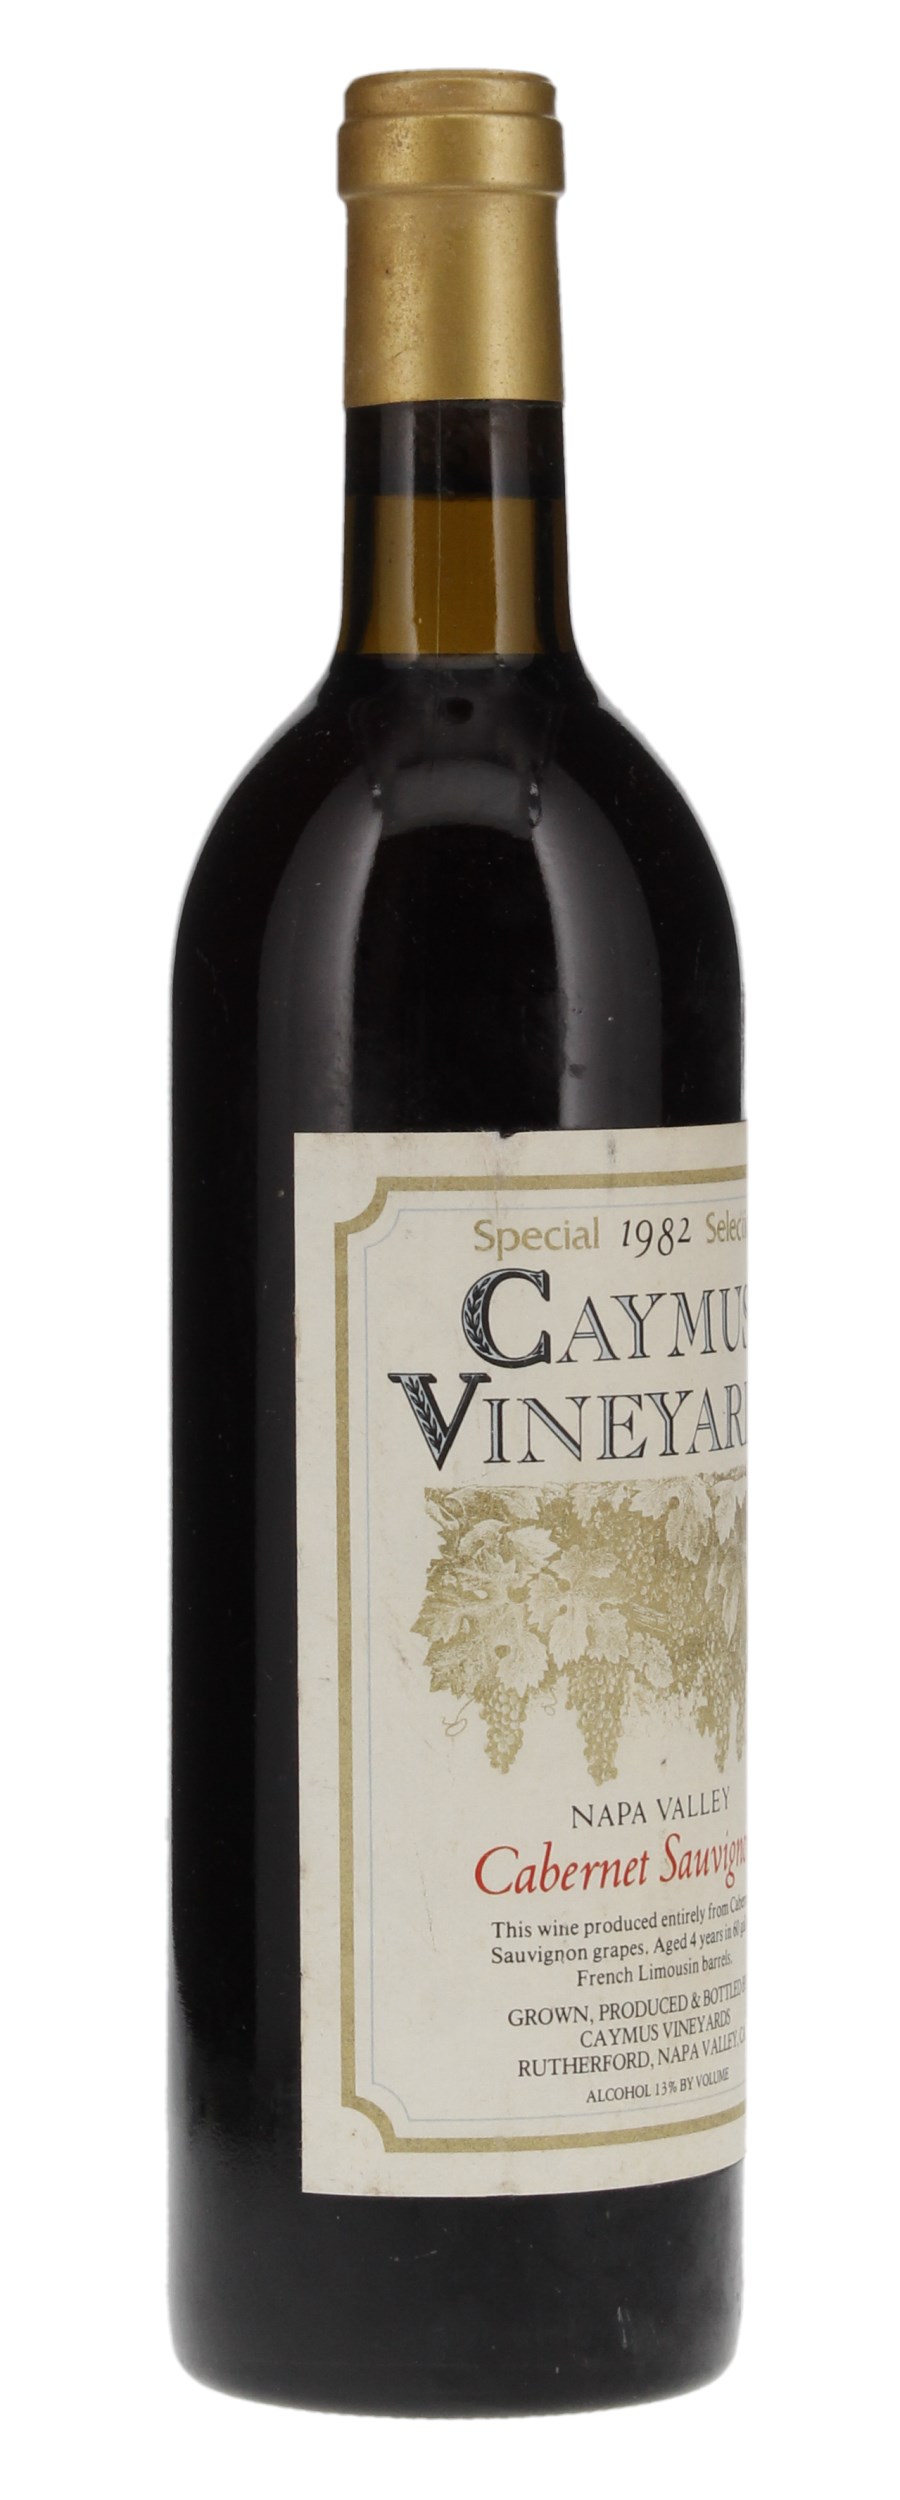 1982 Caymus Special Selection Cabernet Sauvignon, 750ml